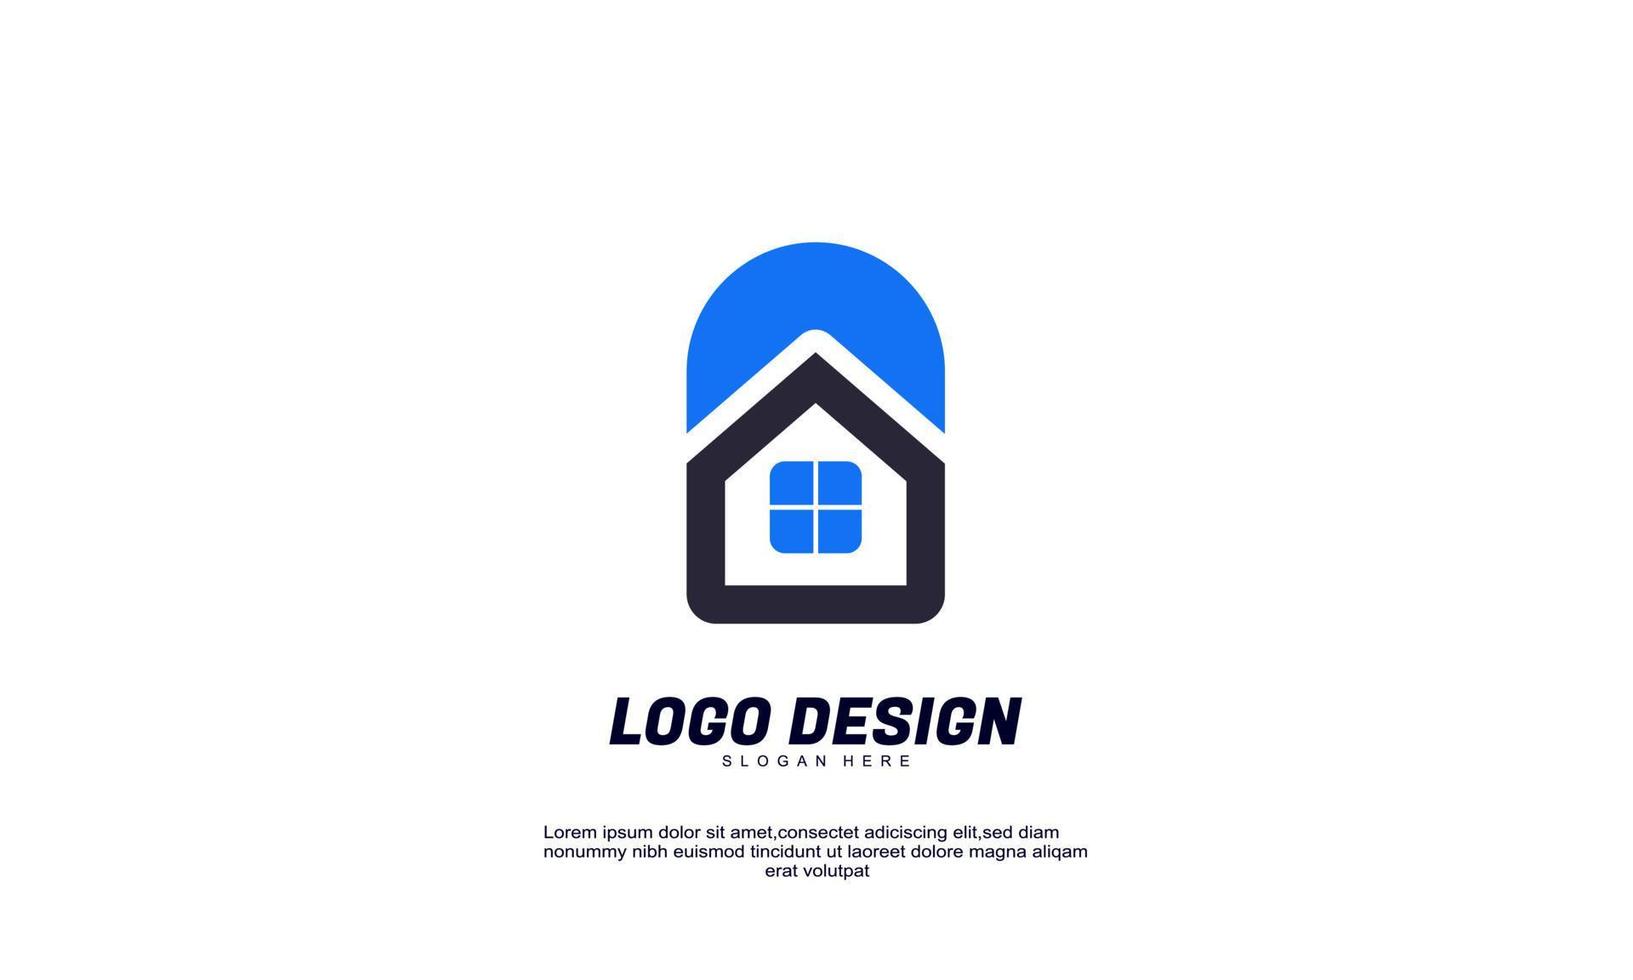 lager vektor abstrakt kreativa hus hem eller fastighets idé logotyp för företag företag eller företag designmall